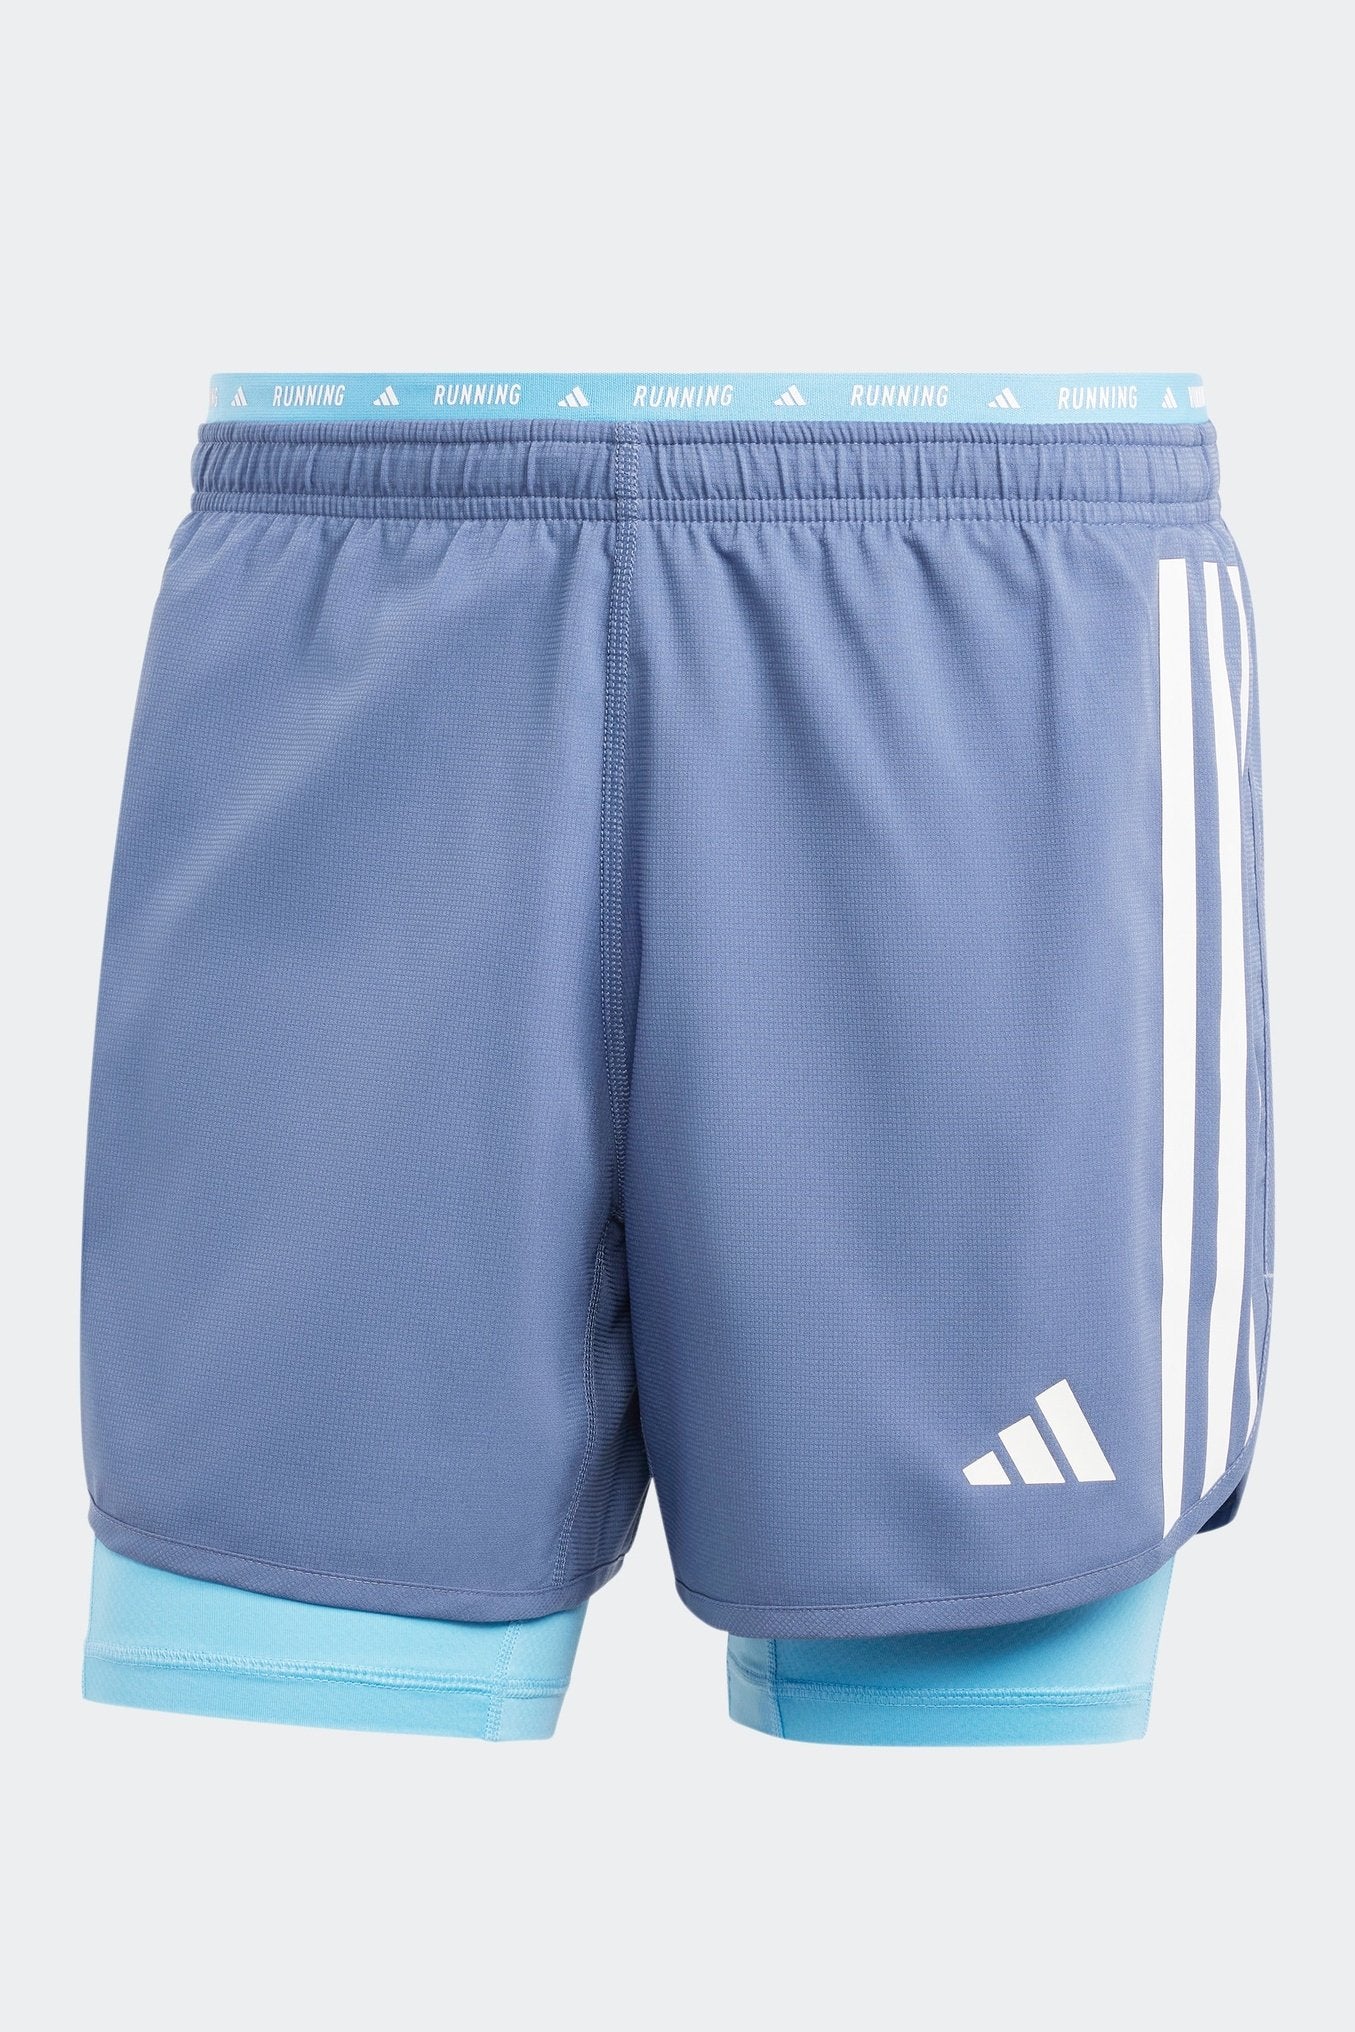 מכנסיים קצרים לגברים OWN THE RUN 3-STRIPES 2-IN-1 בצבע כחול ולבן